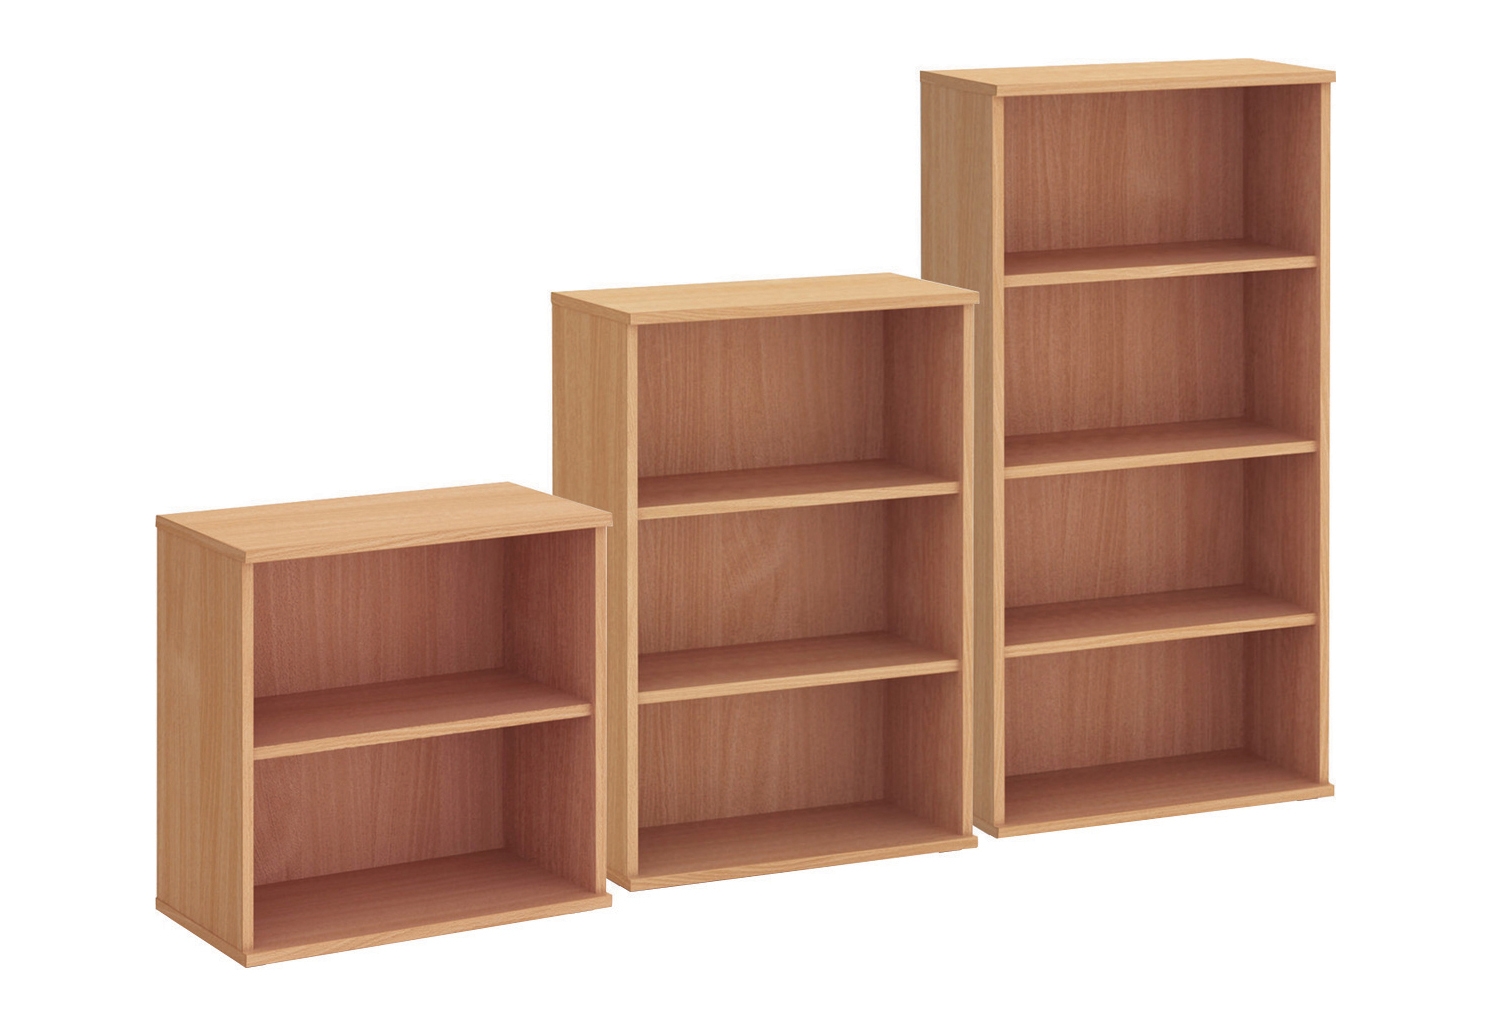 Proteus Office Bookcases, 3 Shelf - 80wx45dx120h (cm), Beech